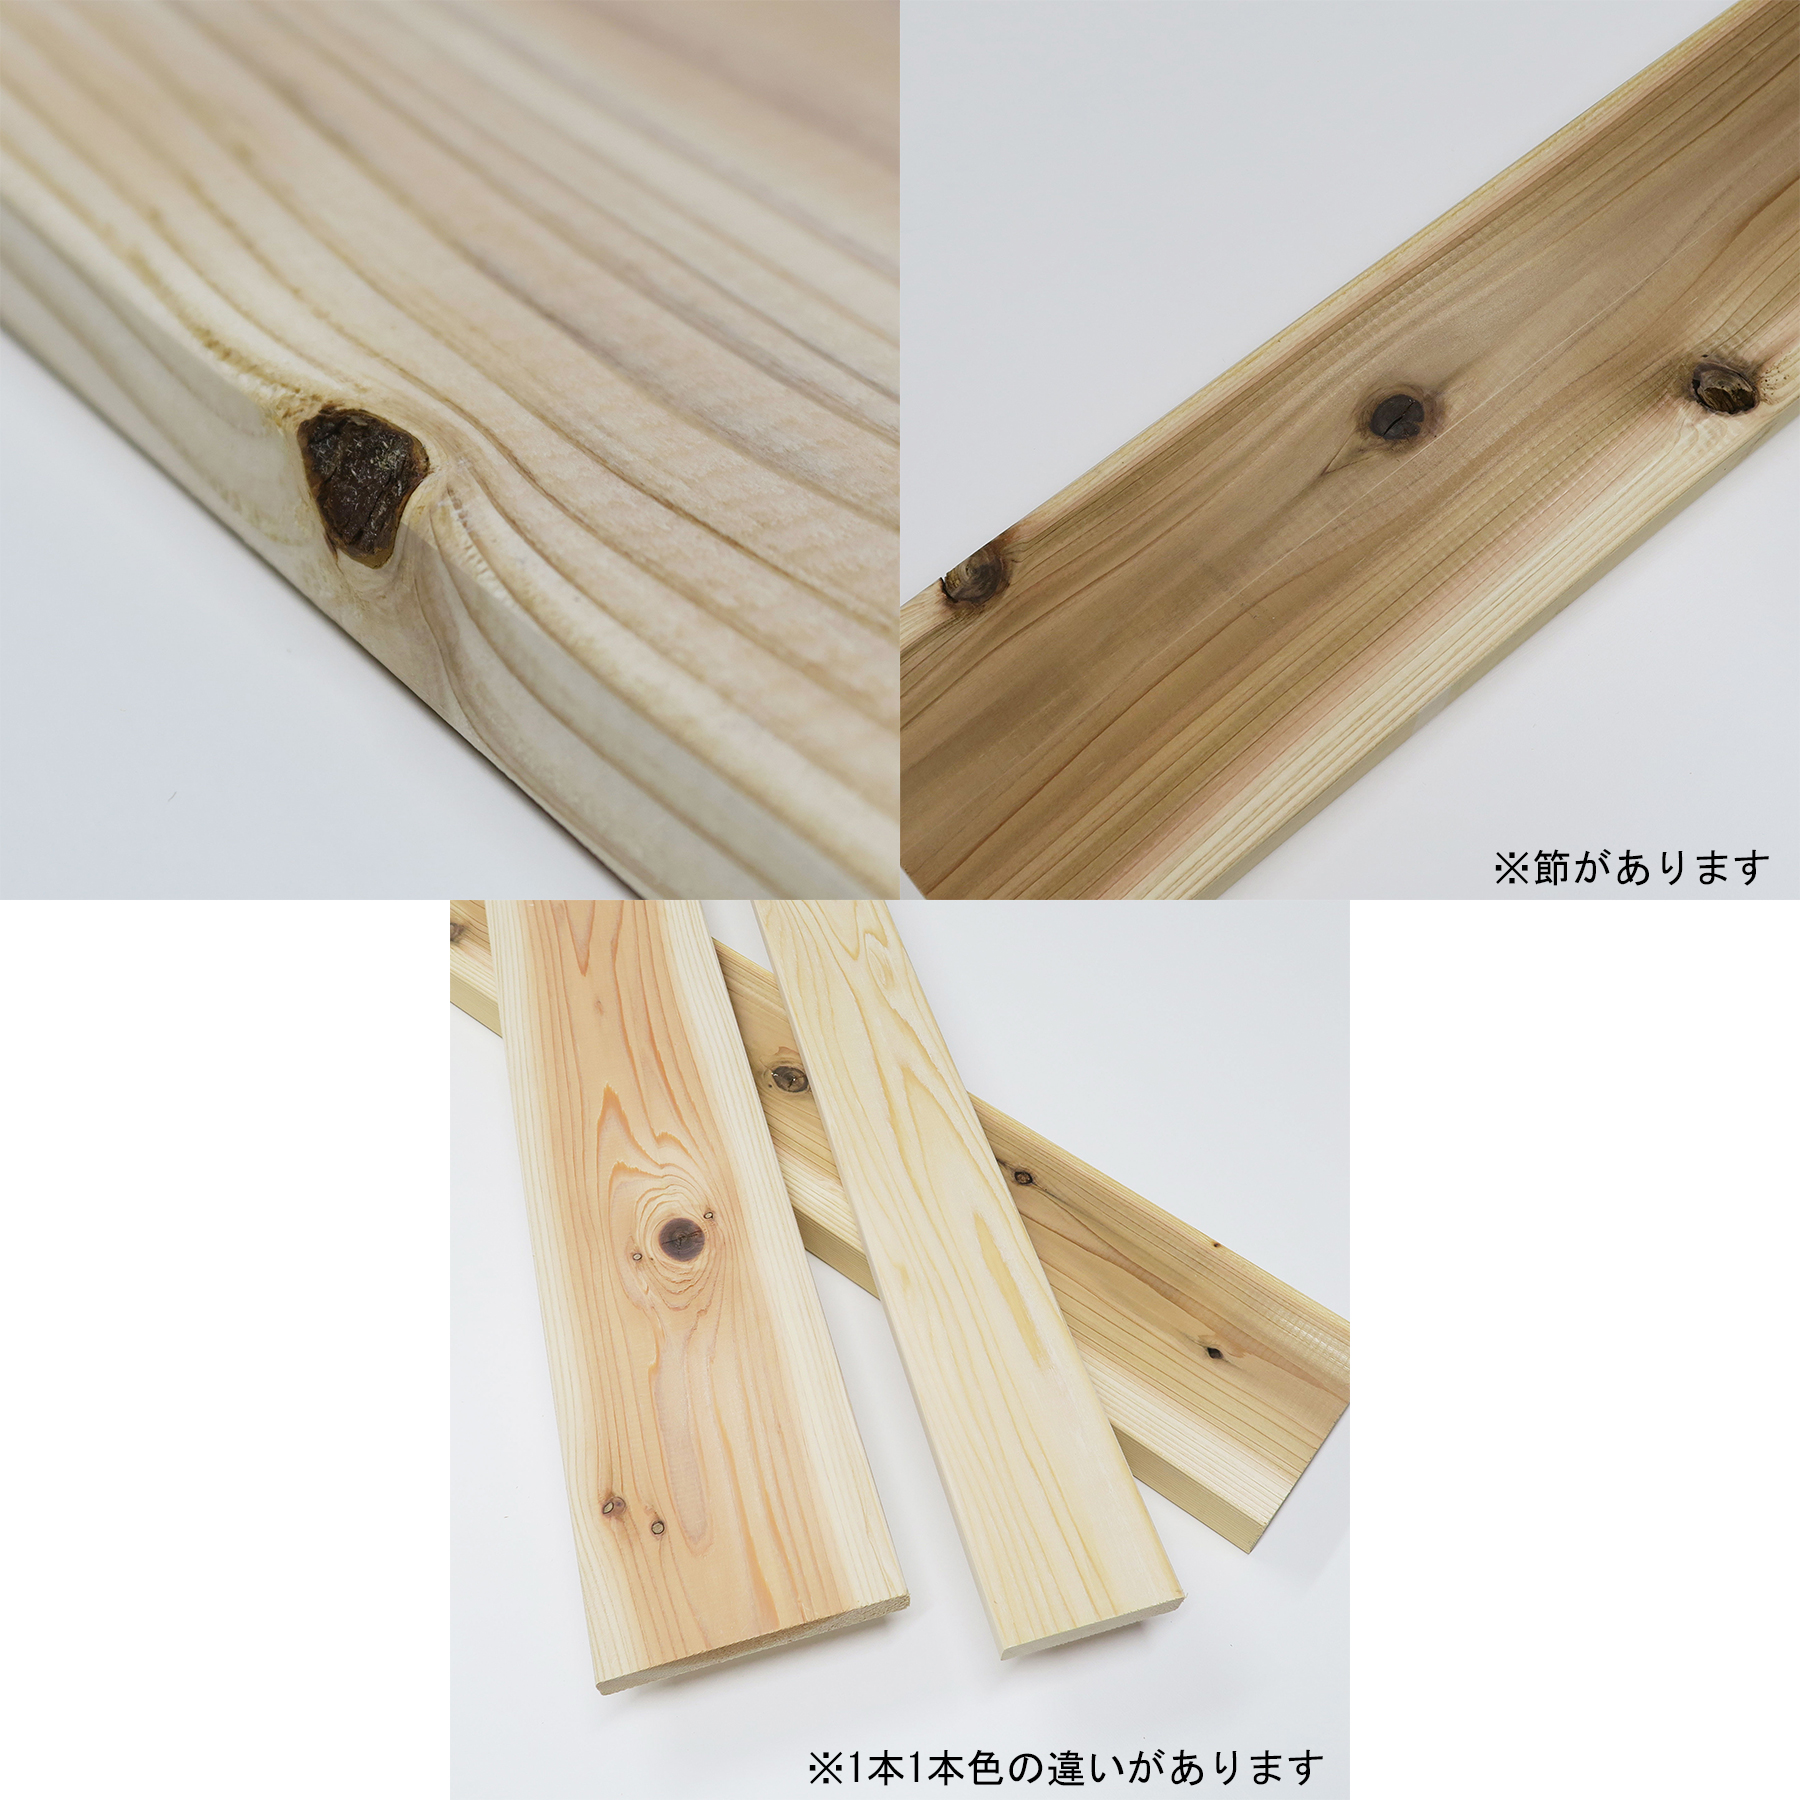 最高の品質の最高の品質の杉 ワンバイ材[1×6材] DIY 木材 1x6 角材 カット可 無塗装 ワンバイシックス 木材